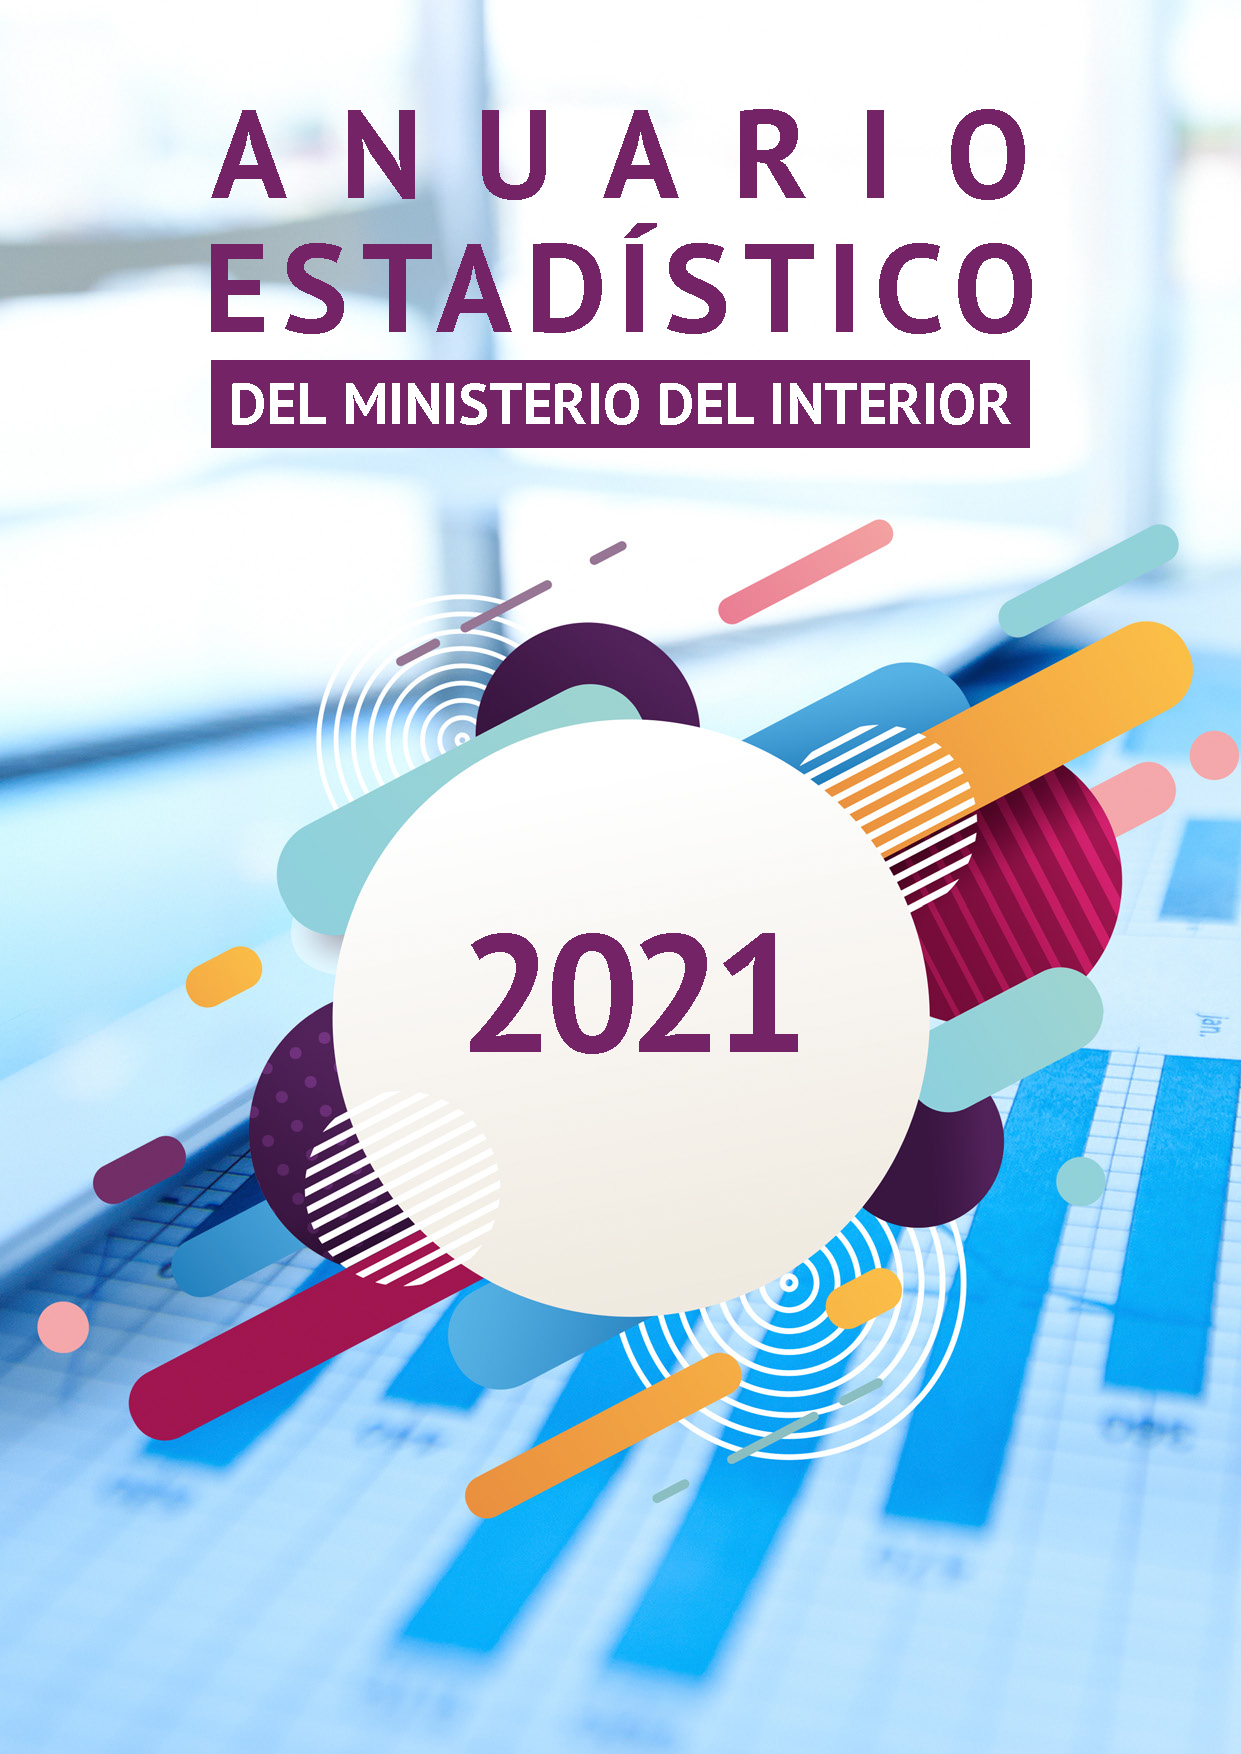 Anuario Estadístico 2021